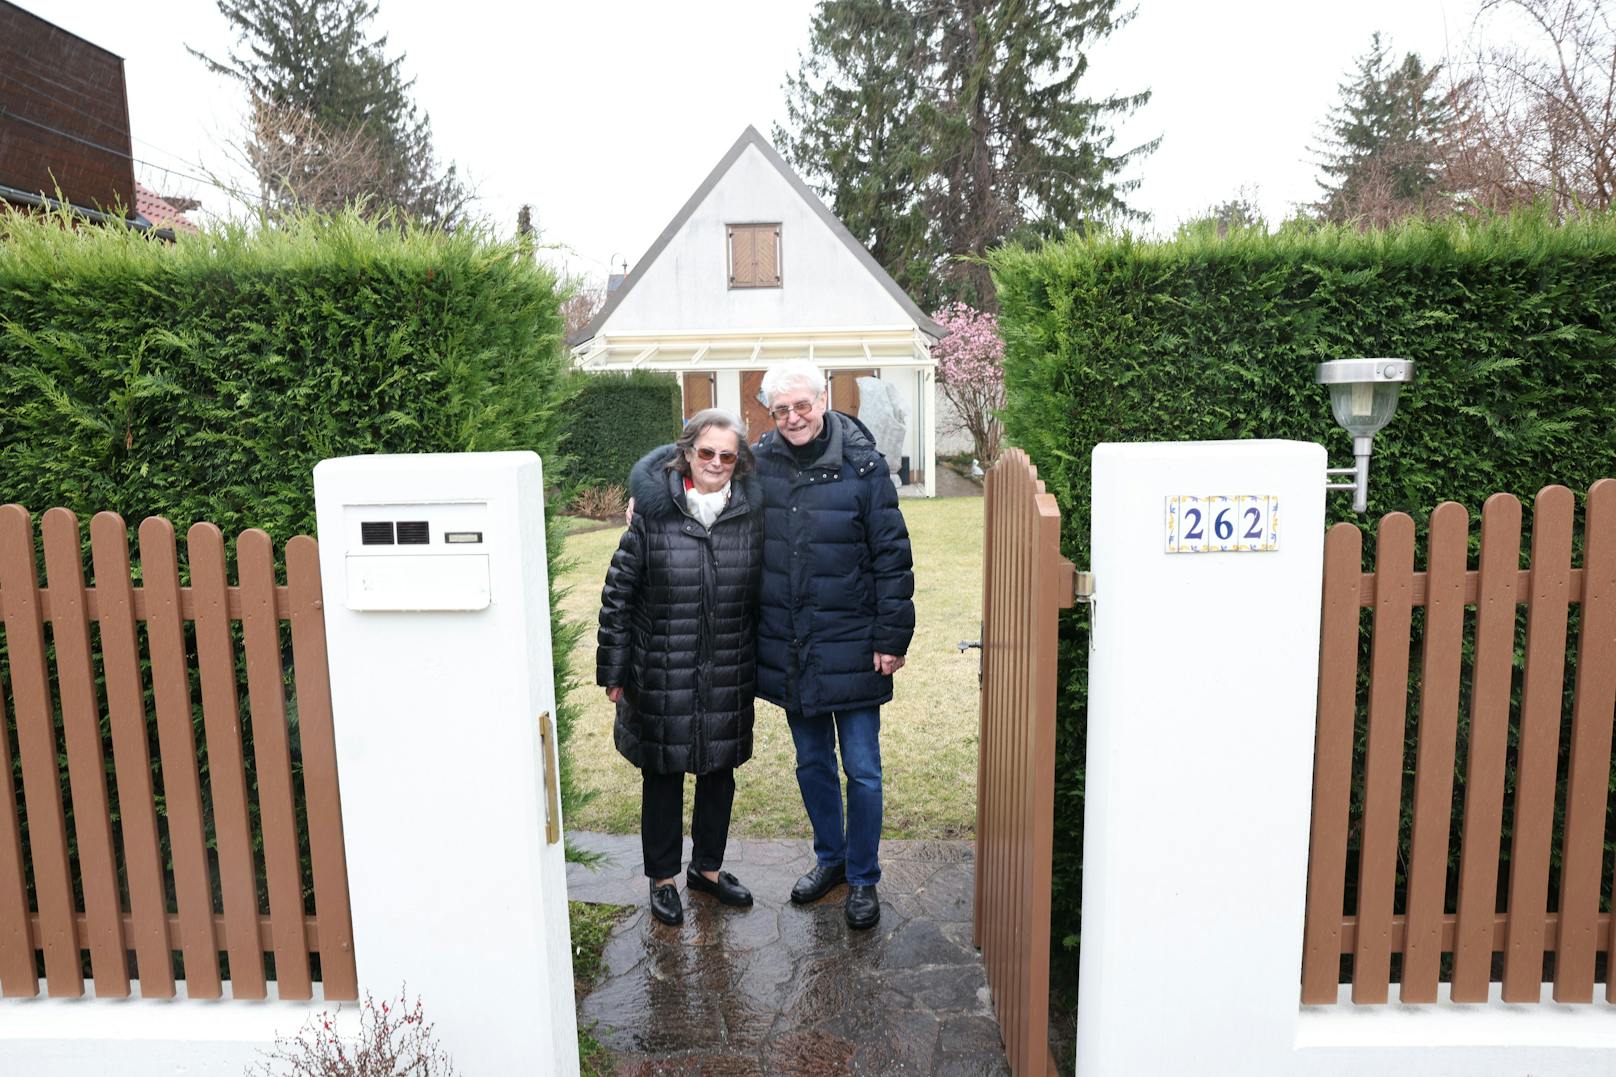 Freude bei Familie Z. aus Wien-Floridsdorf: Sie können nun ein Saisonpickerl für ihre Gartensiedlung in Wien-Donaustadt beantragen.